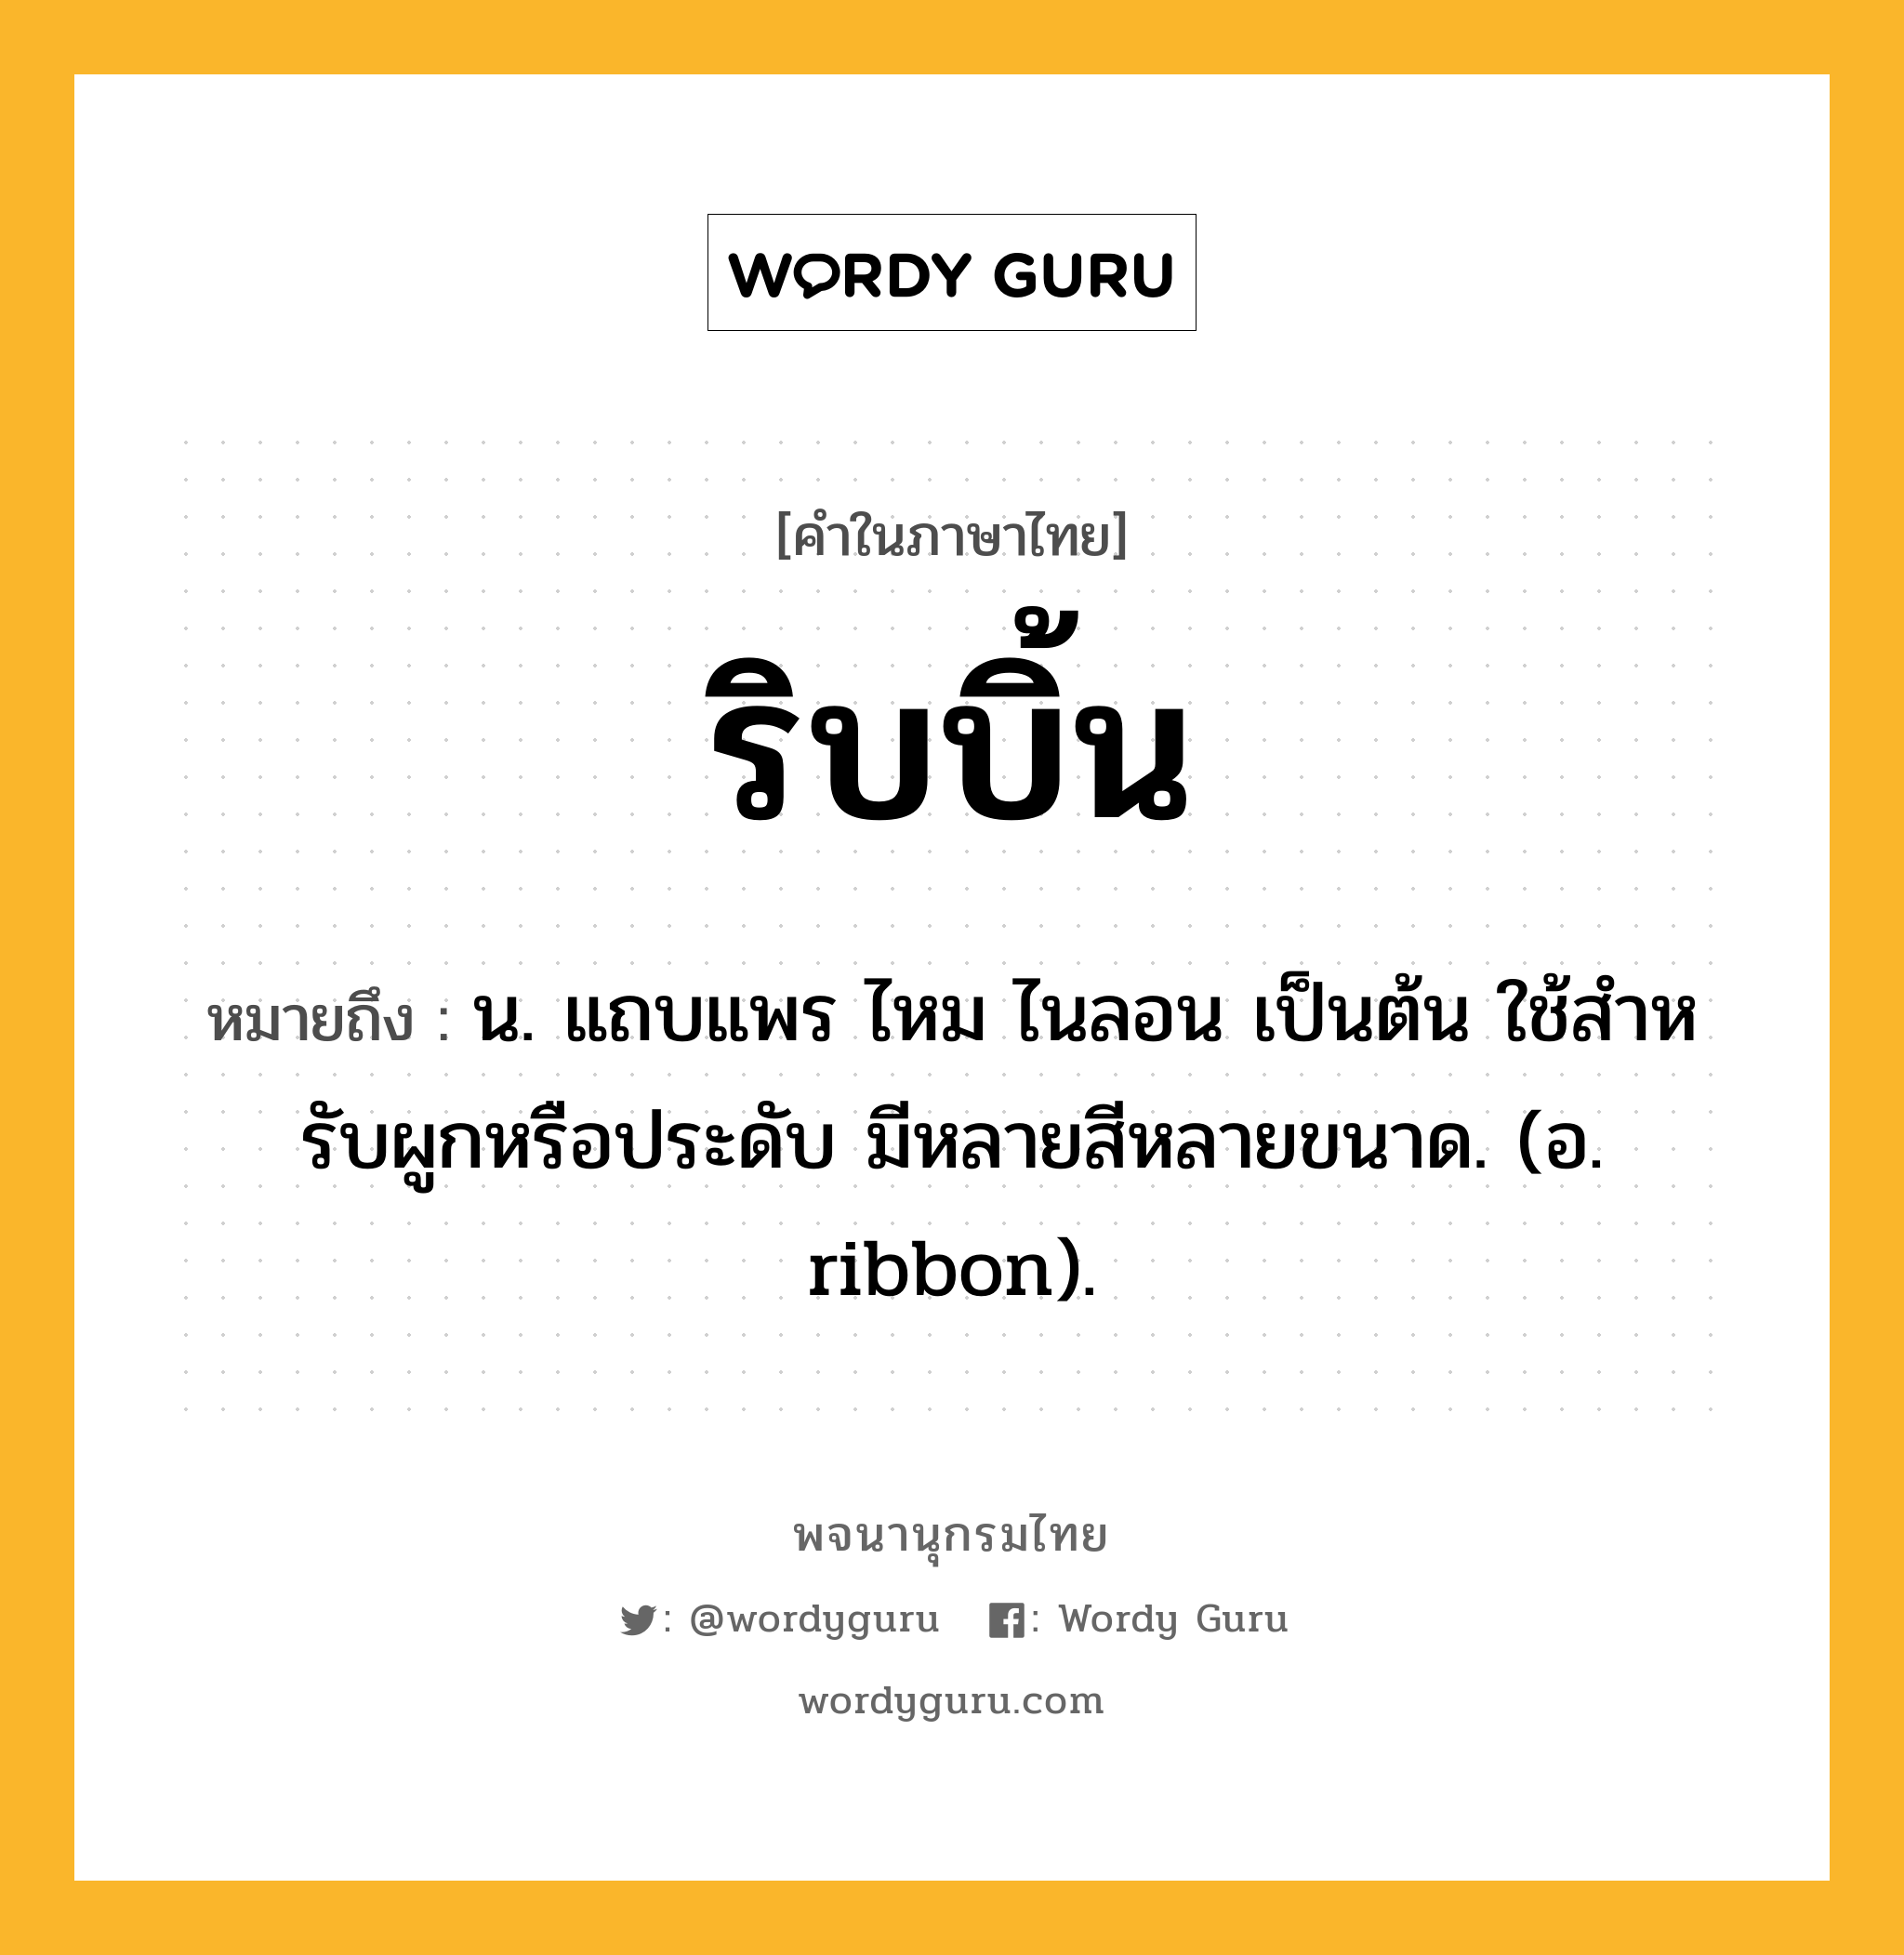 ริบบิ้น ความหมาย หมายถึงอะไร?, คำในภาษาไทย ริบบิ้น หมายถึง น. แถบแพร ไหม ไนลอน เป็นต้น ใช้สําหรับผูกหรือประดับ มีหลายสีหลายขนาด. (อ. ribbon).